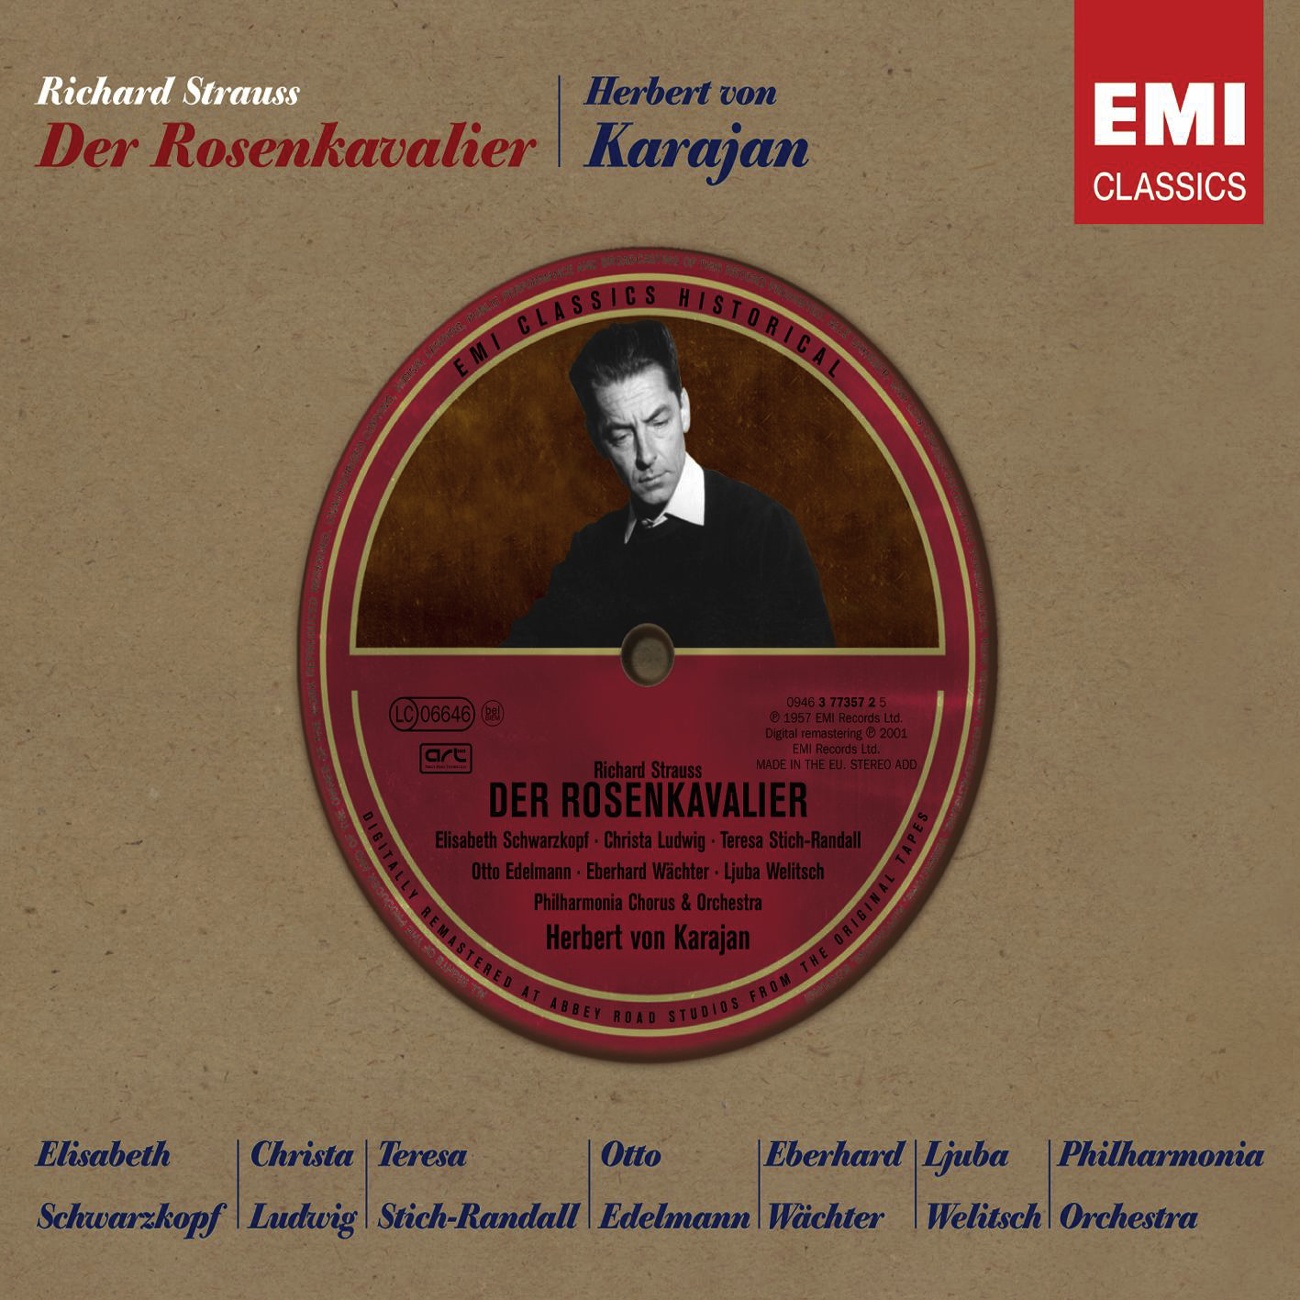 Der Rosenkavalier (2001 Digital Remaster), Act II: Ein ernster Tag, ein großer Tag (Faninal/Marianne/Haushofmeister)